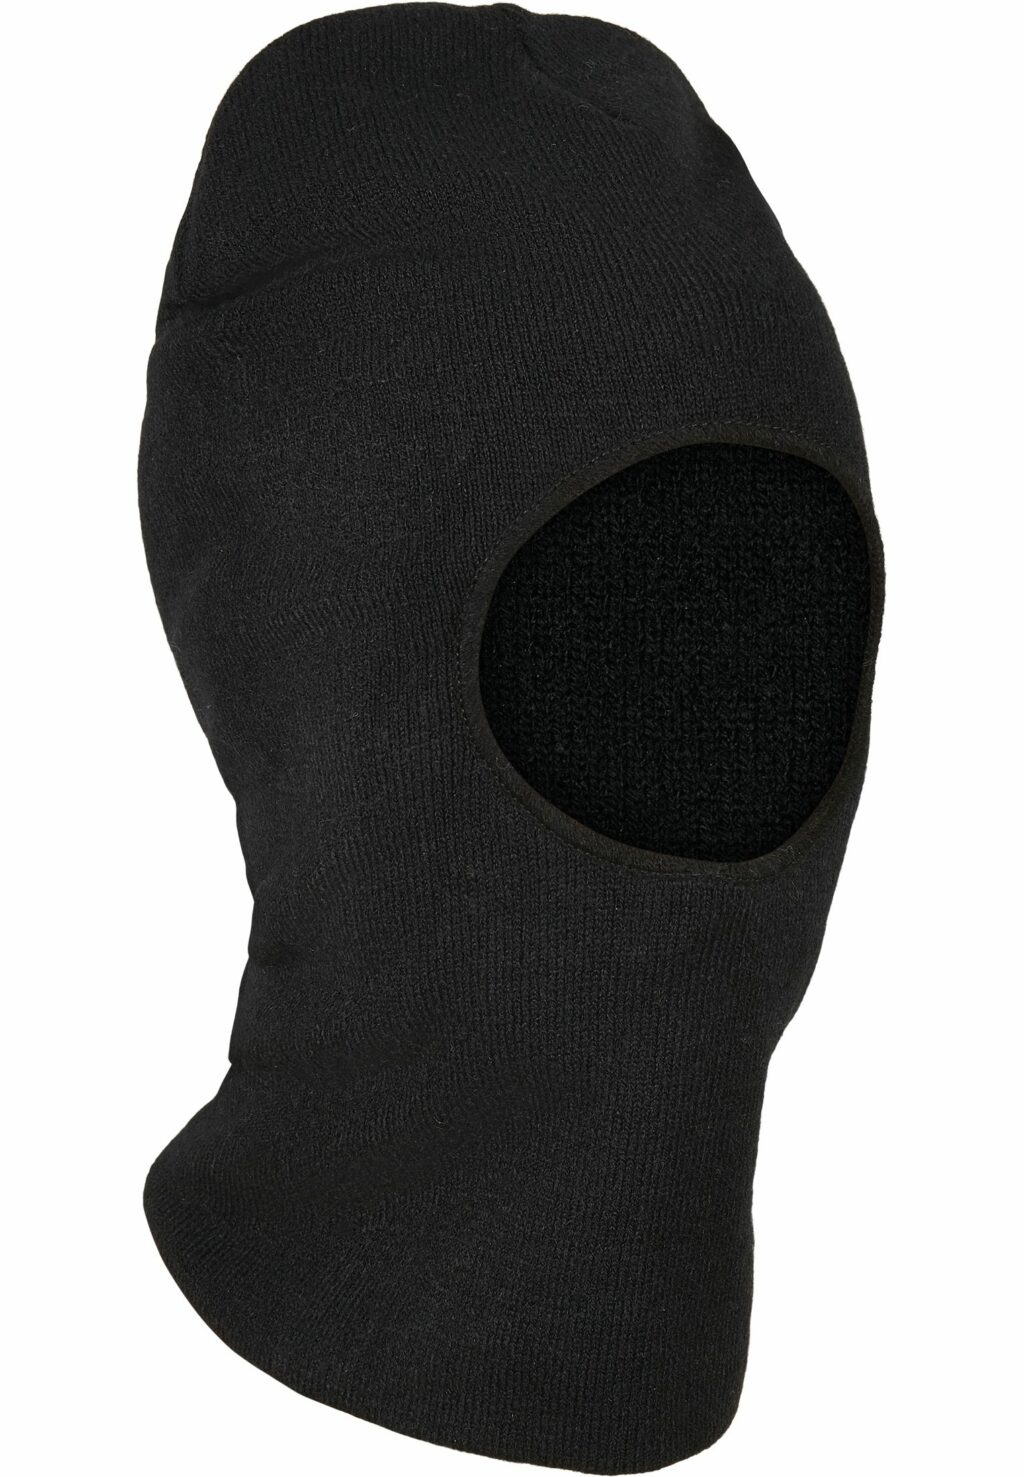 NASA Storm Mask Set black/black/white one MT2084